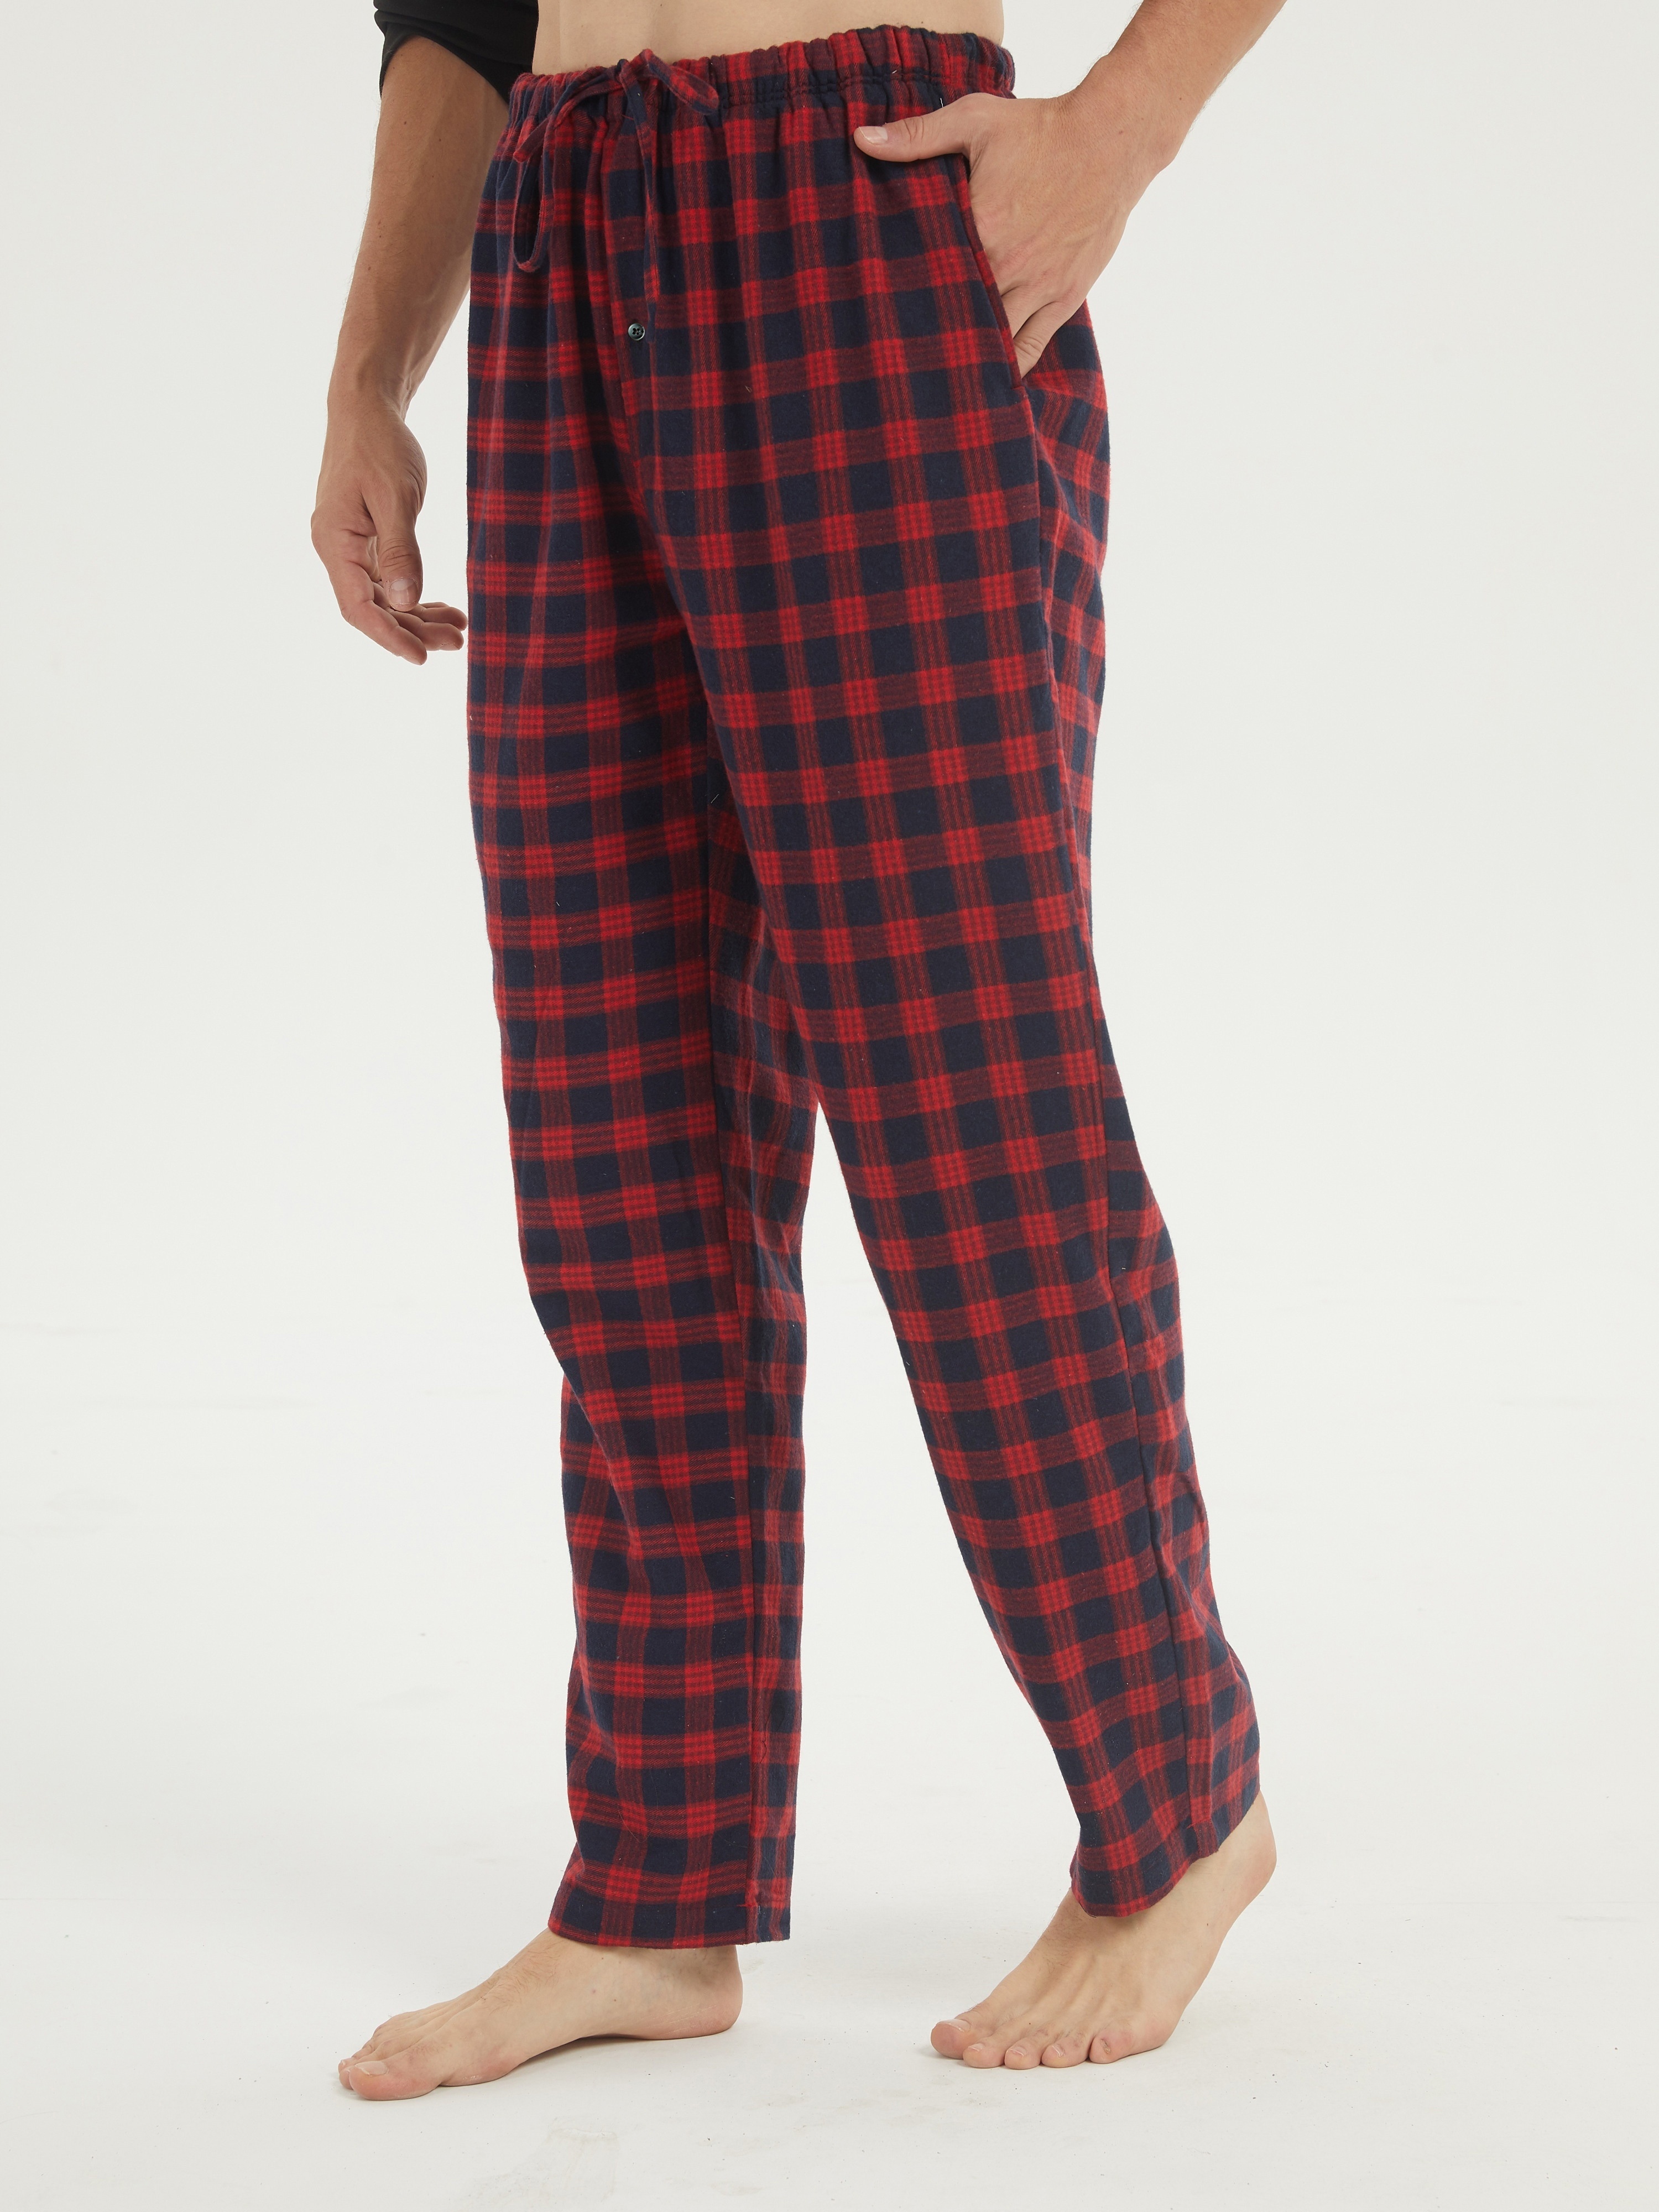 Men's Flannel Pajamas Pants Set Cotton Plaid Pjs Bottoms - Temu Canada